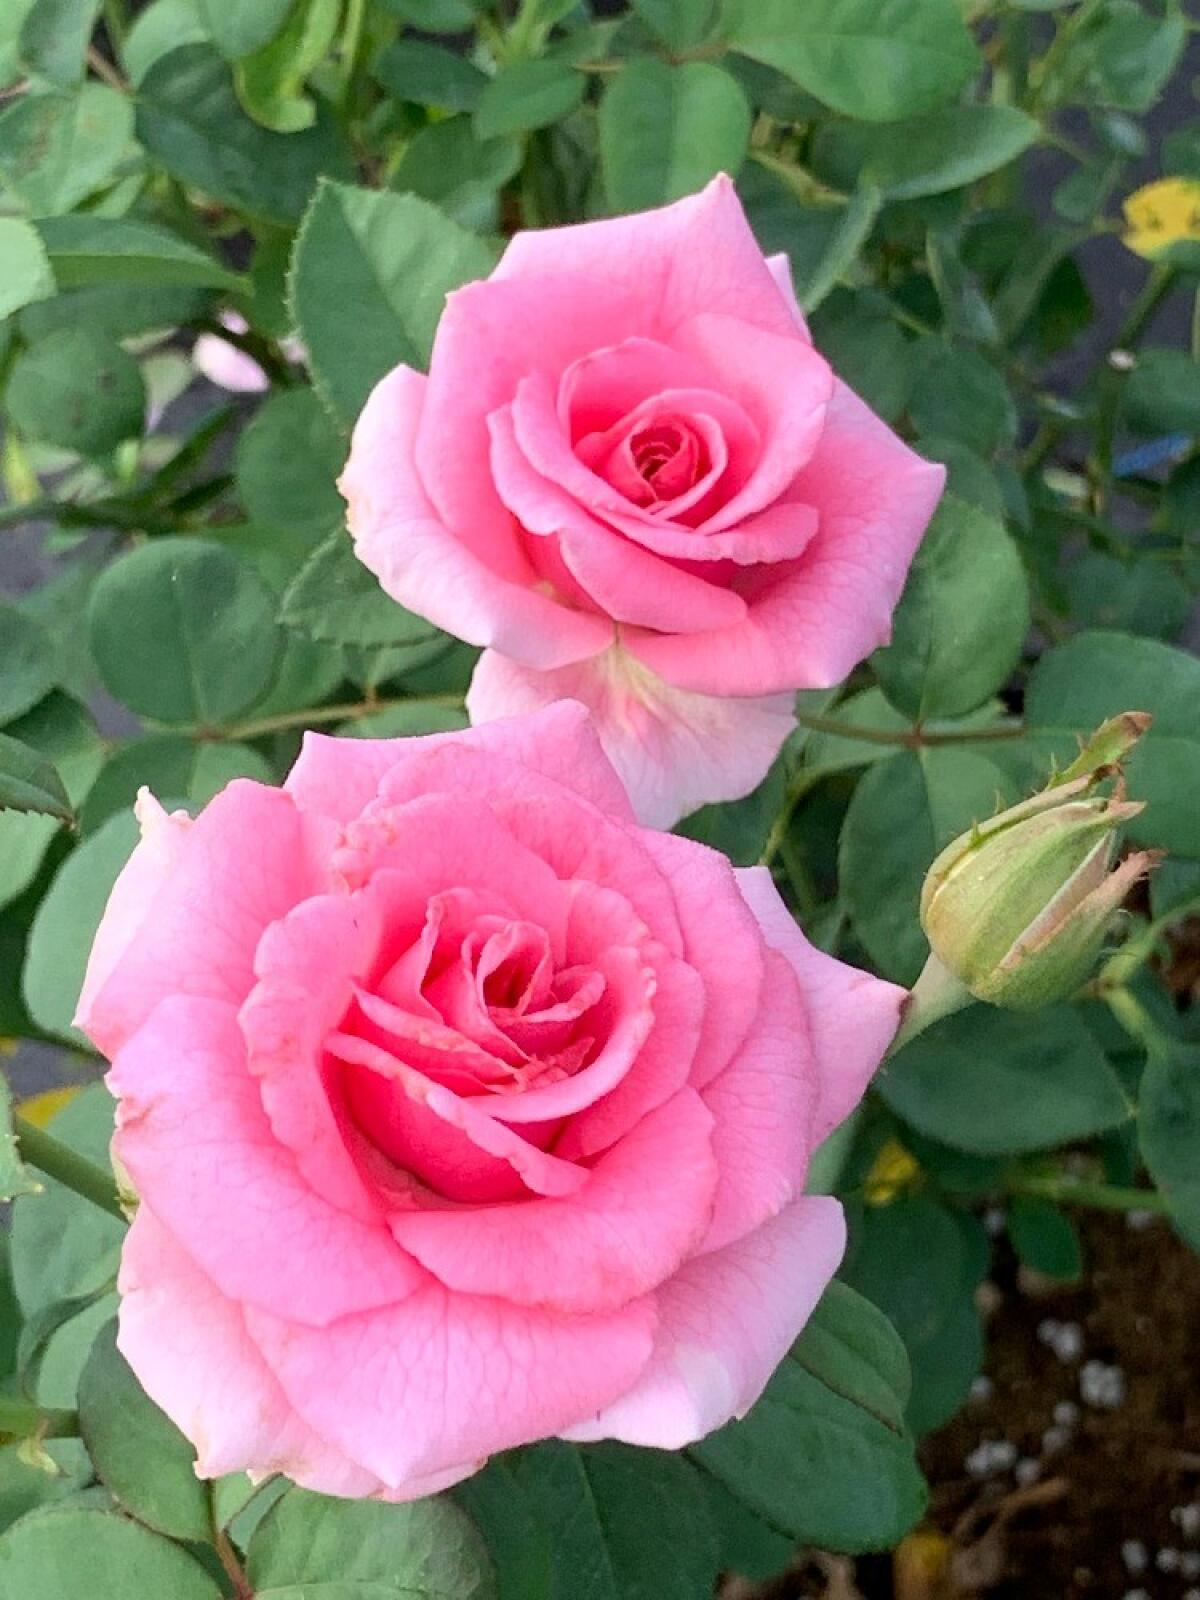 Rose Buds – Red Blossom Tea Company